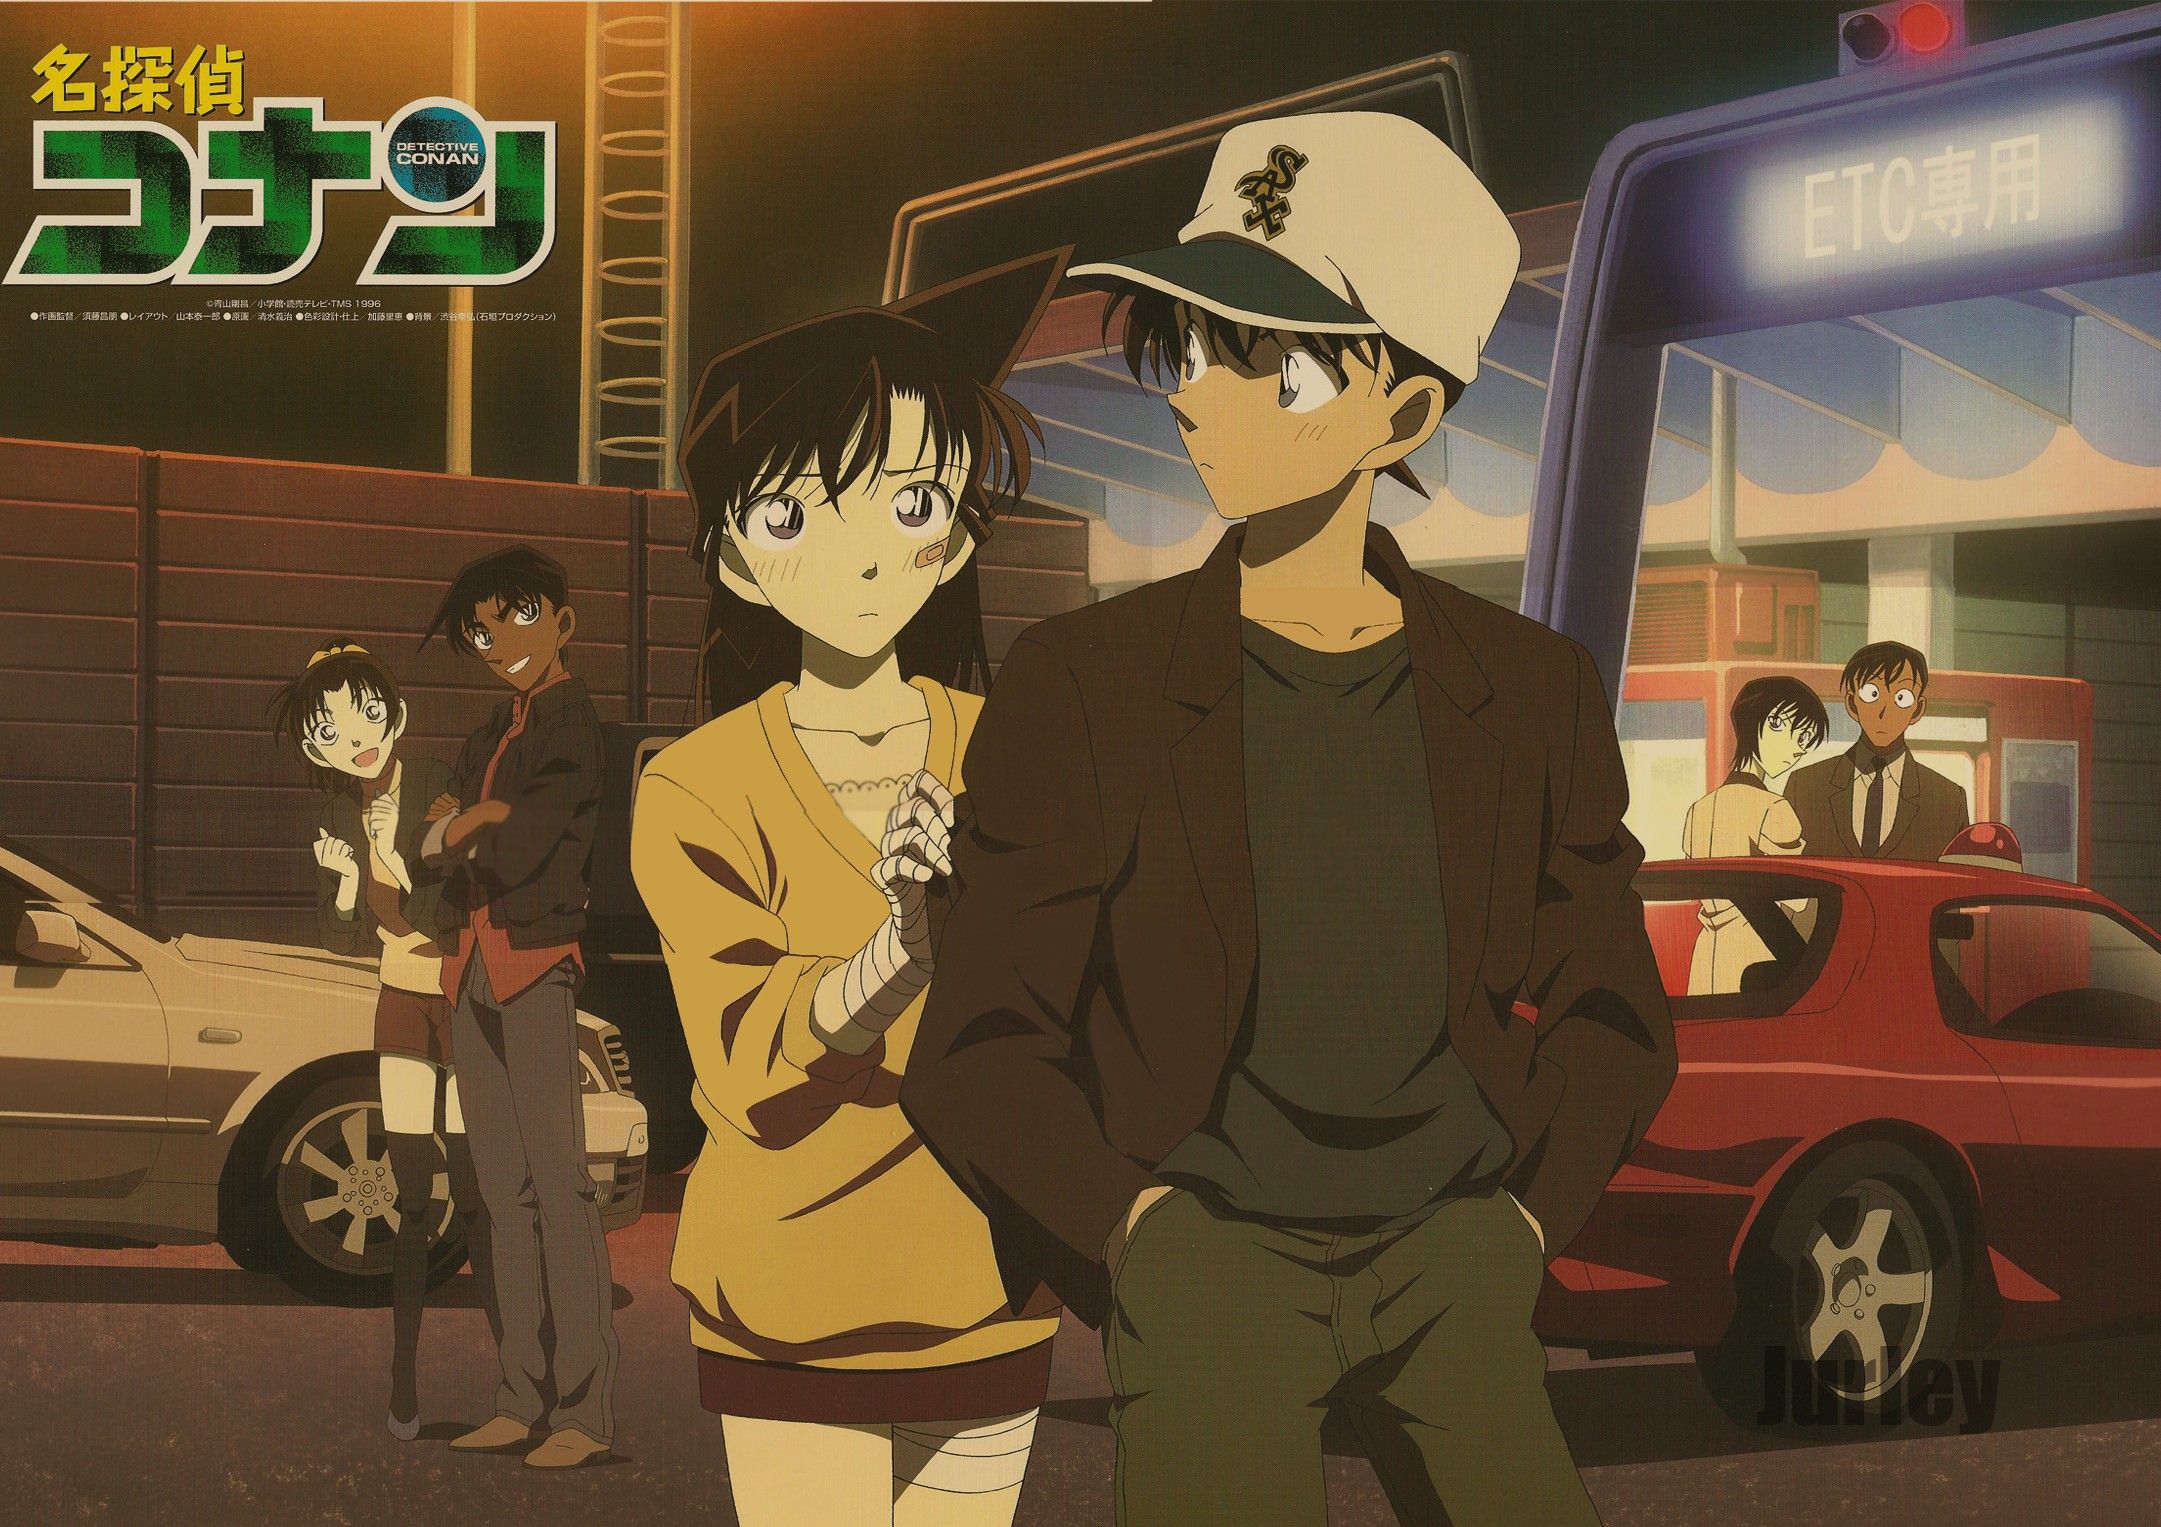 Meitantei Conan (Detective Conan) Anime Image Board